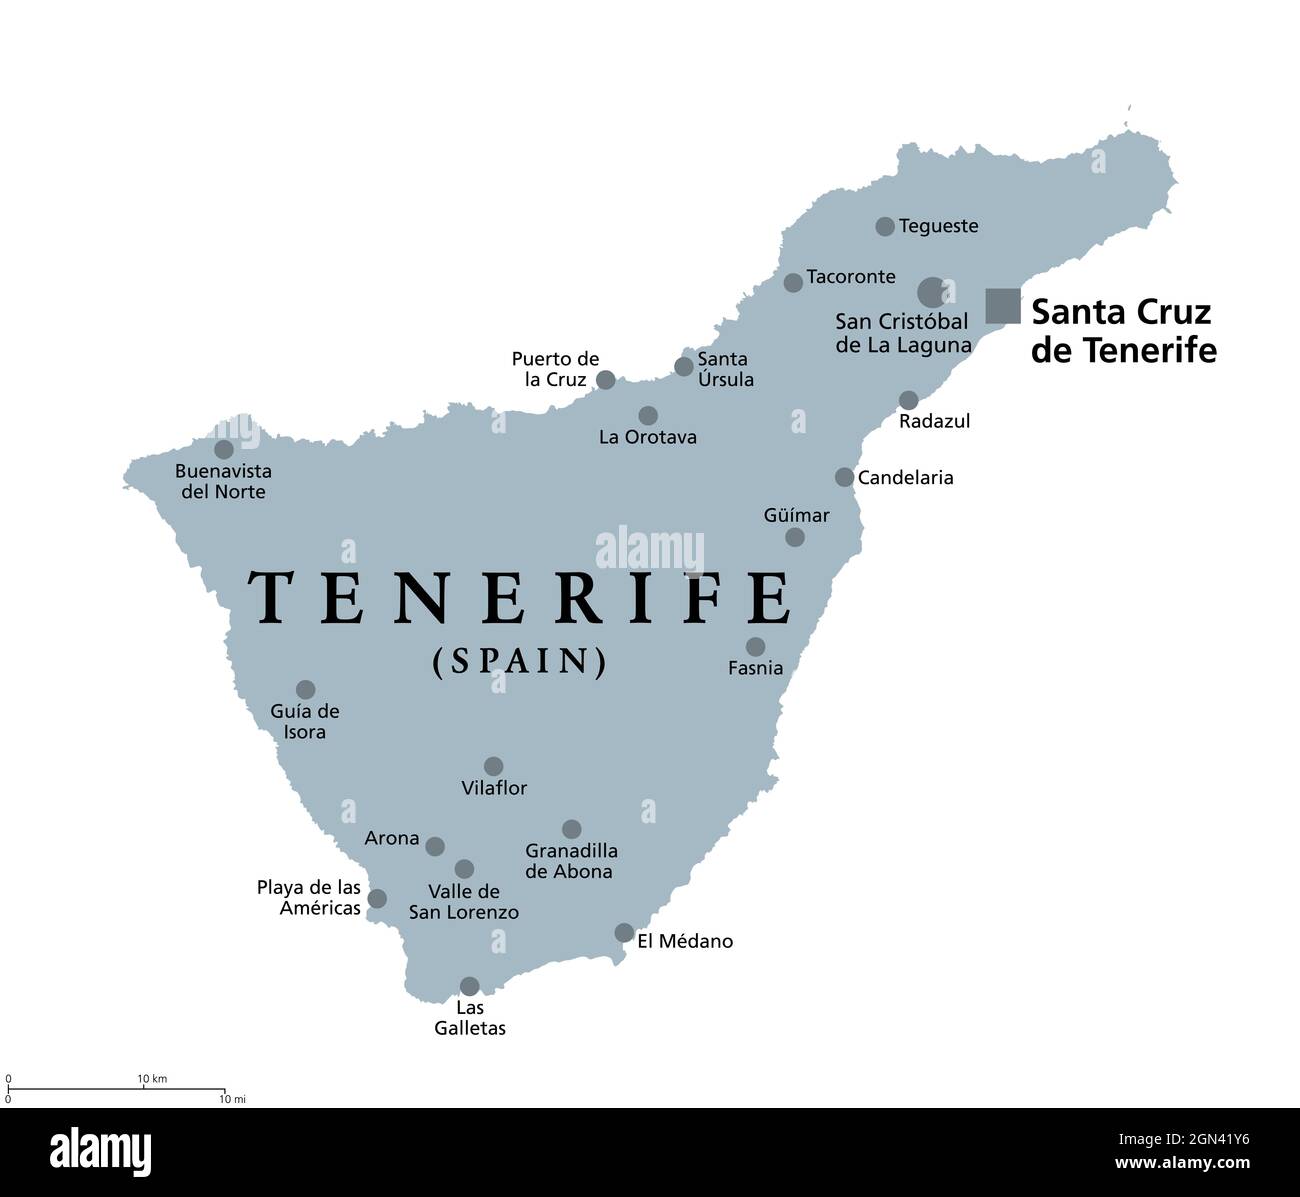 Île de Ténérife, carte politique grise, avec la capitale Santa Cruz de Ténérife. Île la plus grande et la plus peuplée des îles Canaries, Espagne. Banque D'Images